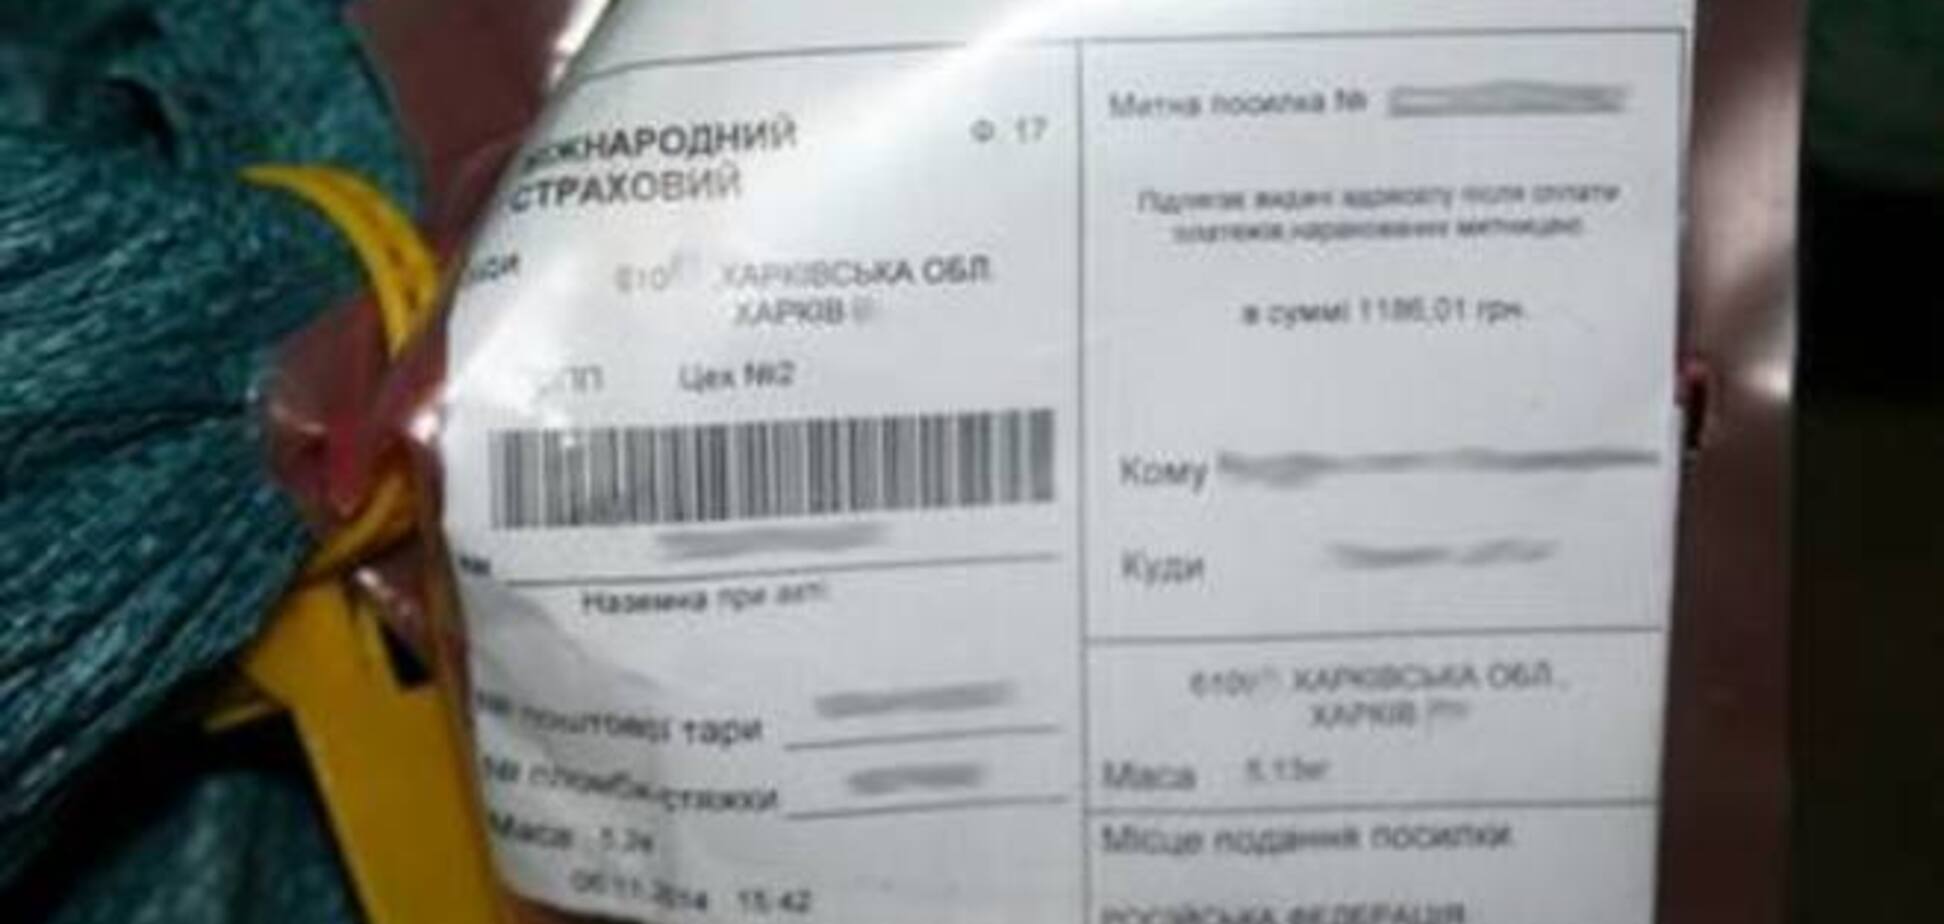 Харьковский студент наладил поставку сепаратистской символики из РФ в Украину